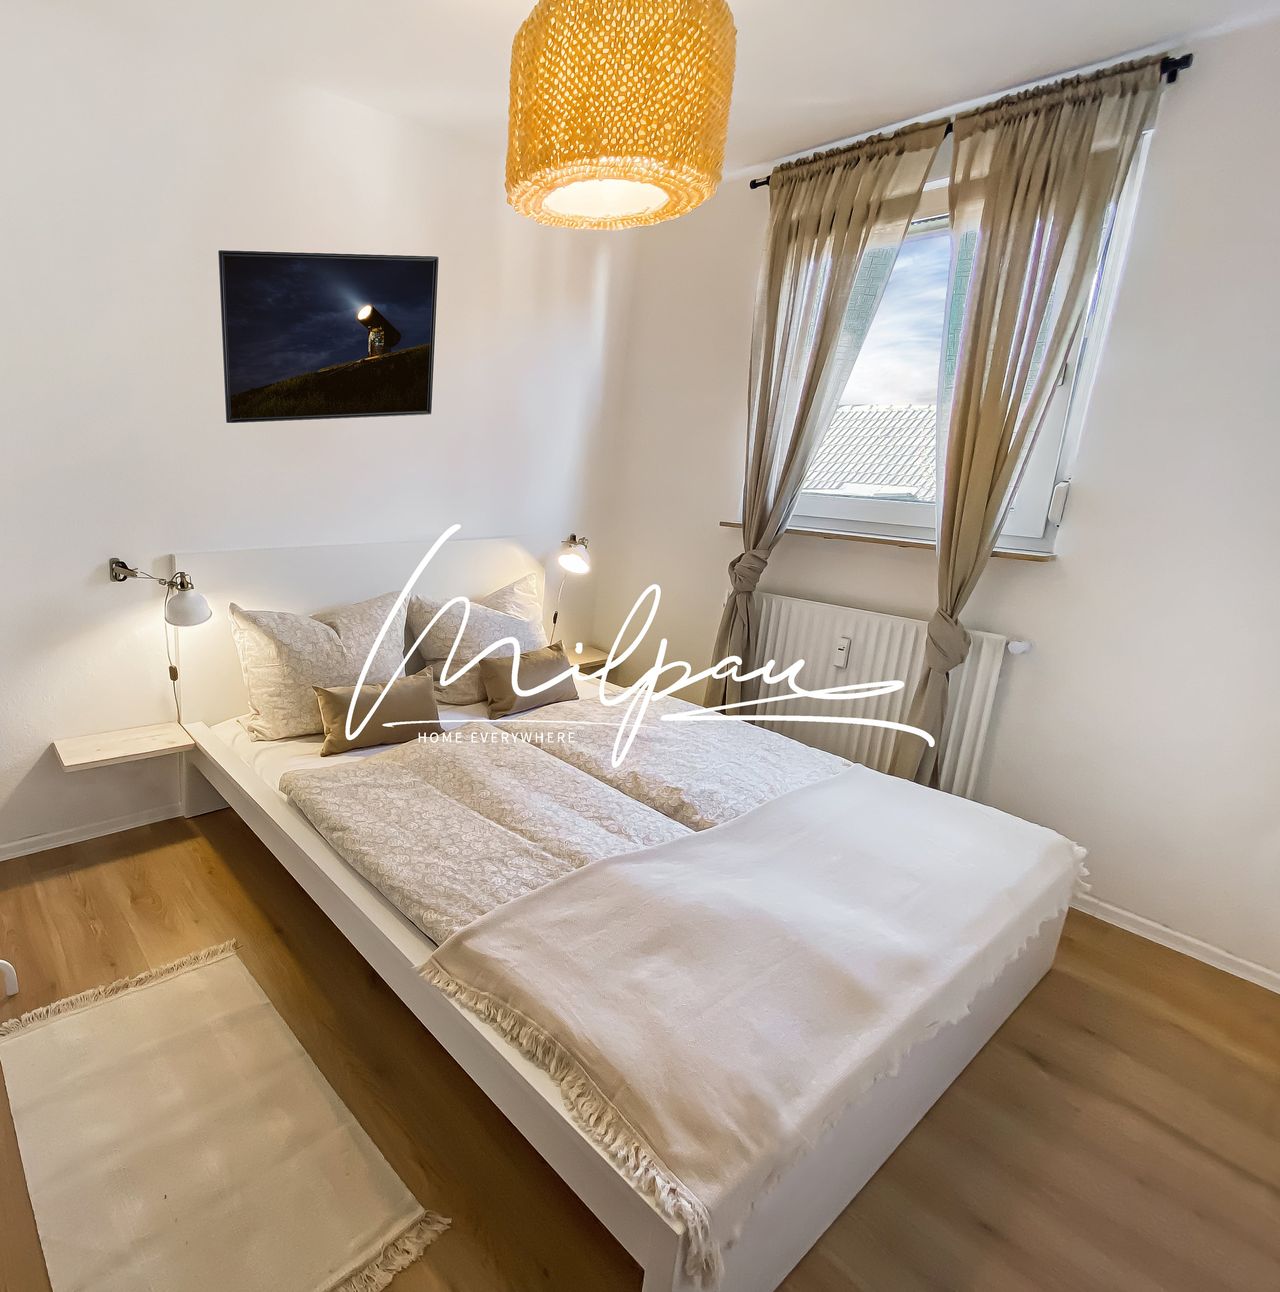 MILPAU Buer2 - Modern apartment with queen bed, Netflix, Nespresso, washing machine & Smart TV